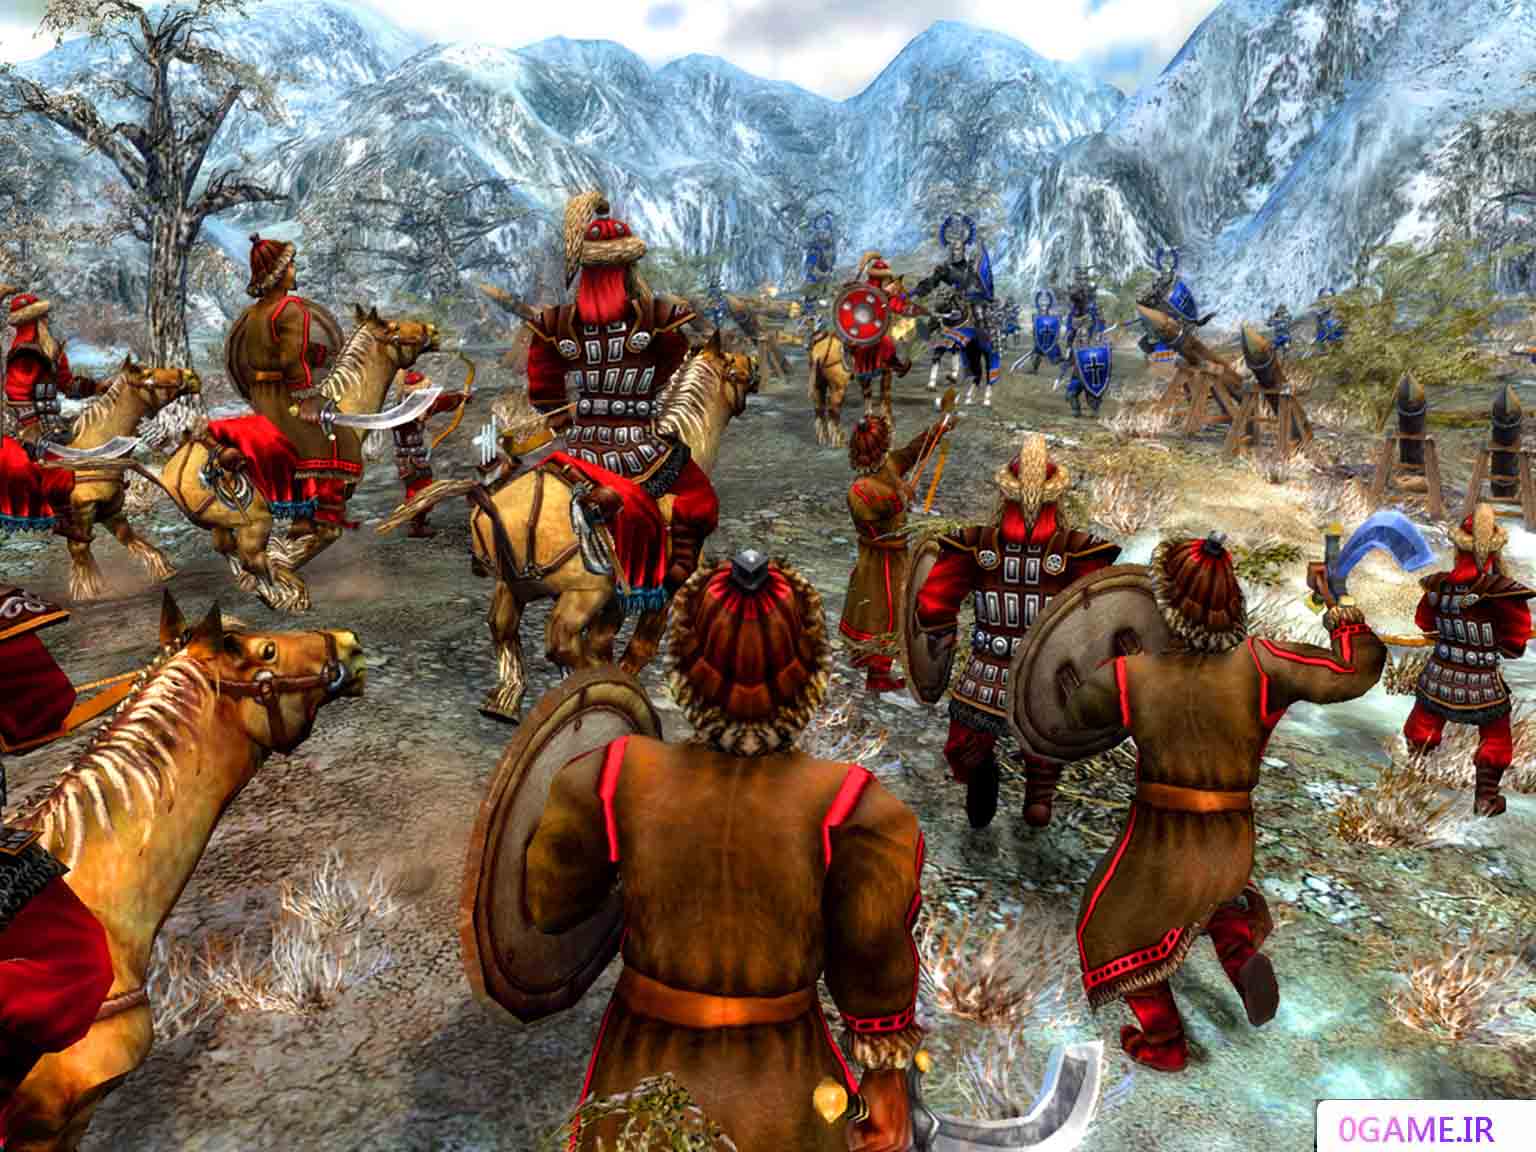 دانلود بازی اردوی زرین : امپراتوری مغول (The Golden Horde) نسخه کامل برای کامپیوتر